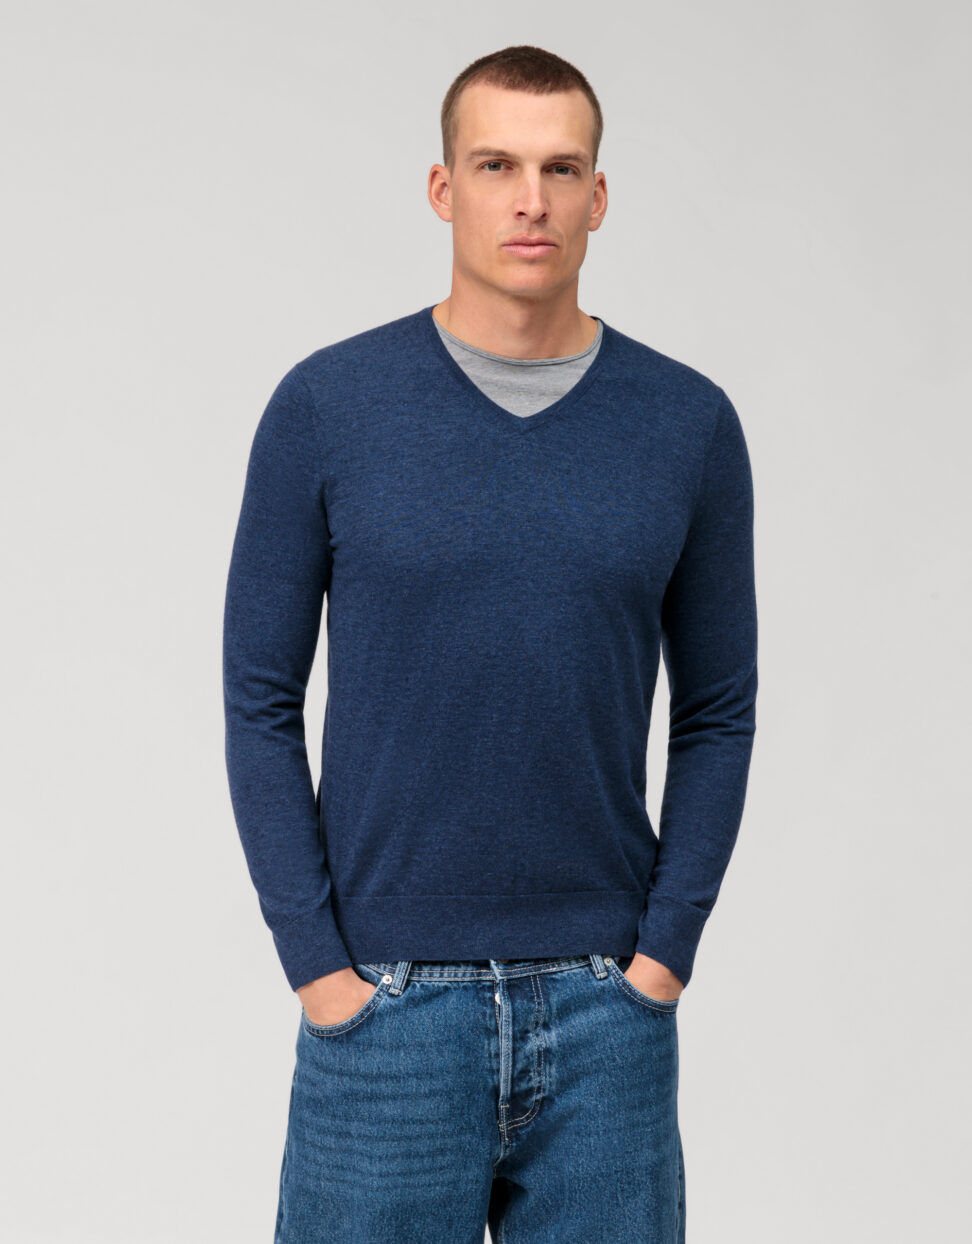 Sweter Olymp V-neck body fit / niebieski / 01511019 merynos/jedwab